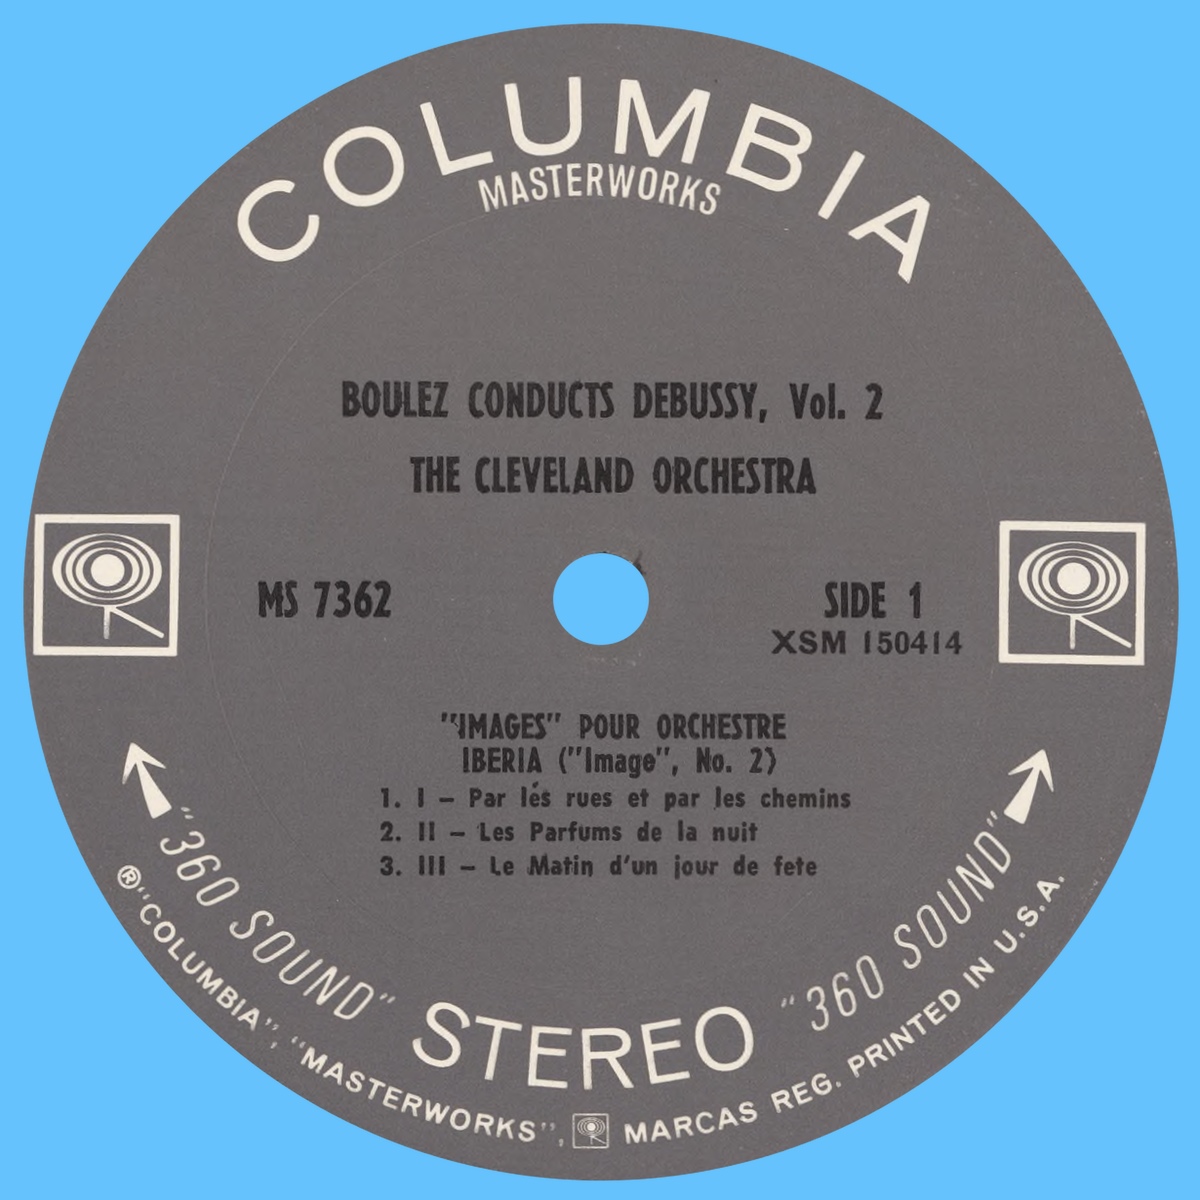 Étiquette recto du disque Columbia MS 7362